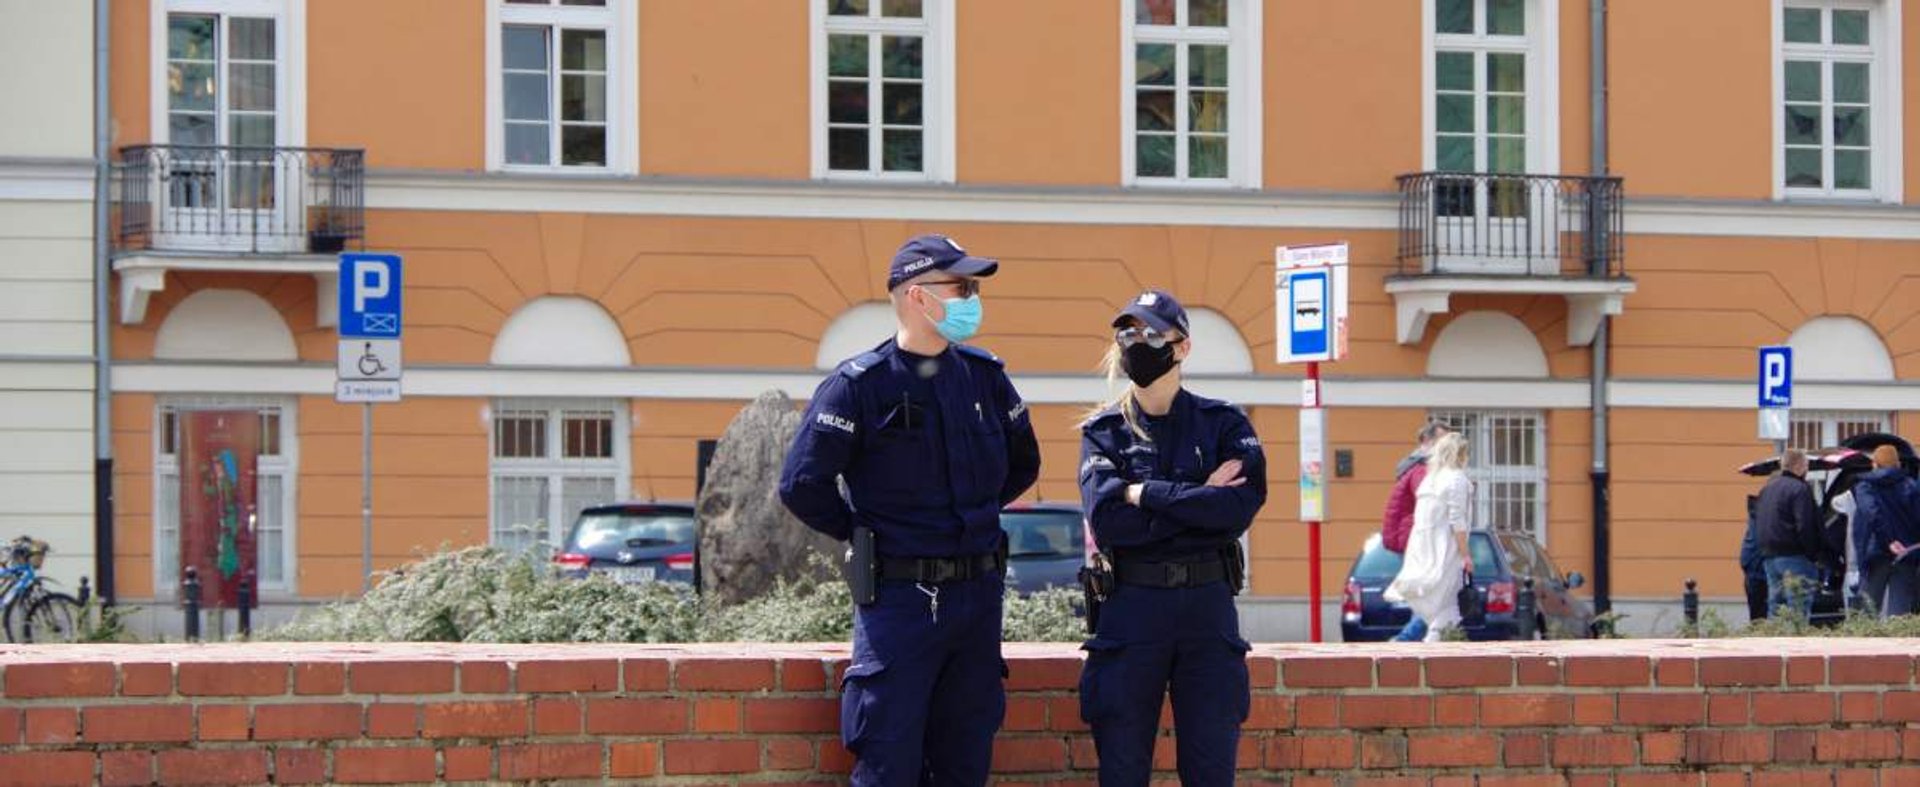 HOTO: ZOFIA I MAREK BAZAK / EAST NEWS Warszawa N/Z Patrol policyjny w maseczkach ochronnych na Placu Zamkowym